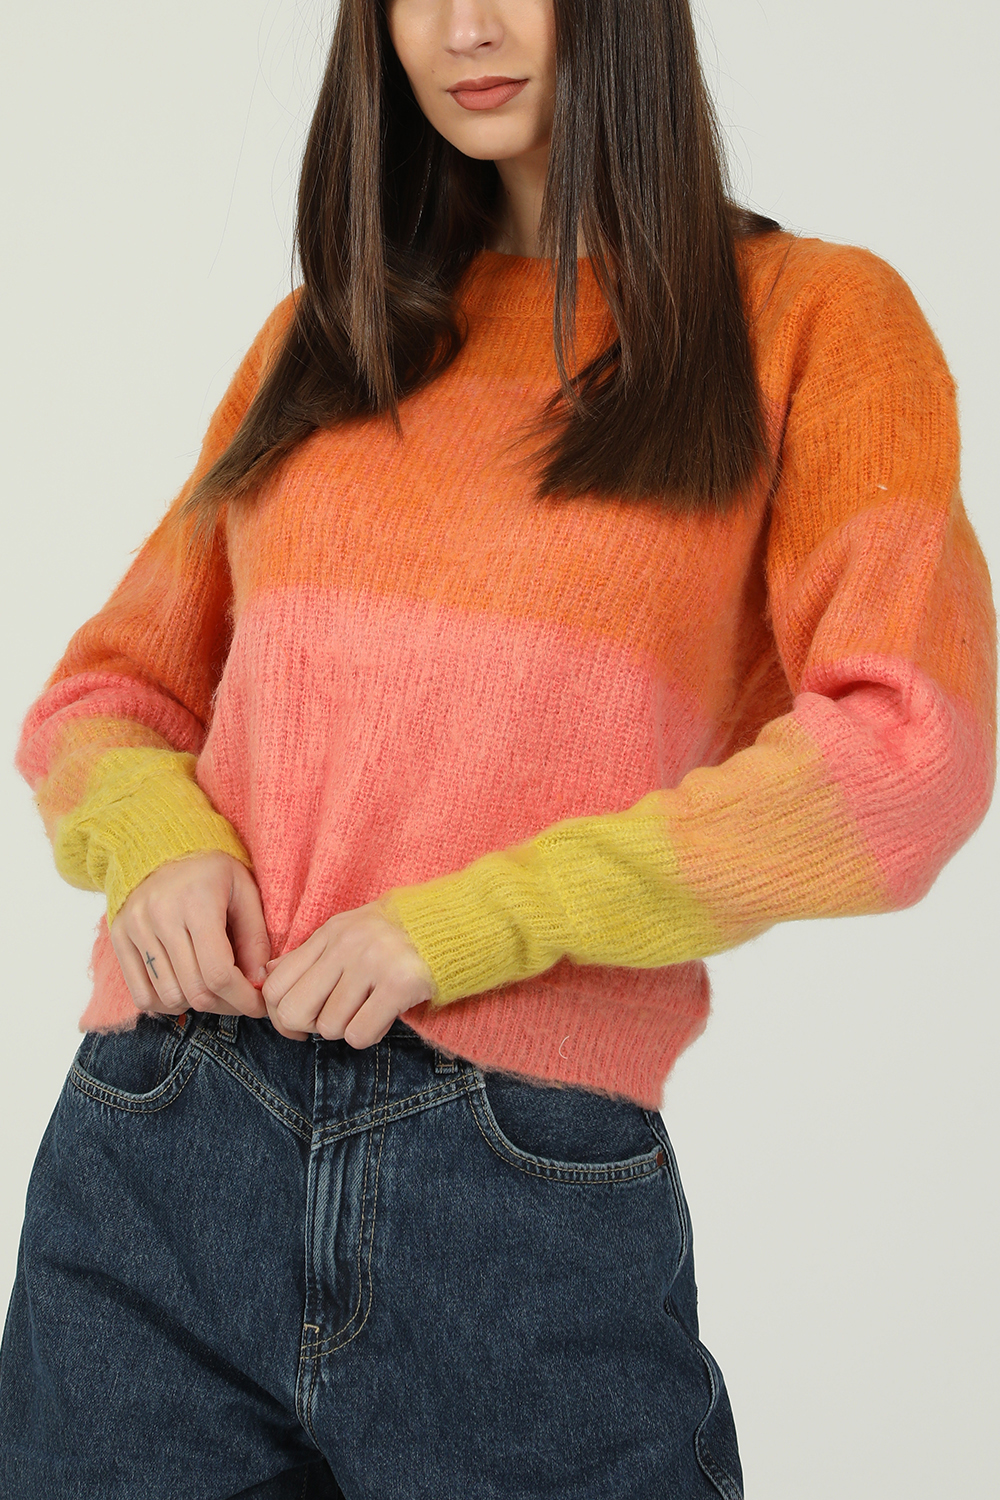 Γυναικεία/Ρούχα/Πλεκτά-Ζακέτες/Πουλόβερ FREE PEOPLE COLLECTION - Γυναικείο πουλόβερ FREE PEOPLE πορτοκαλί ροζ κίτρινο